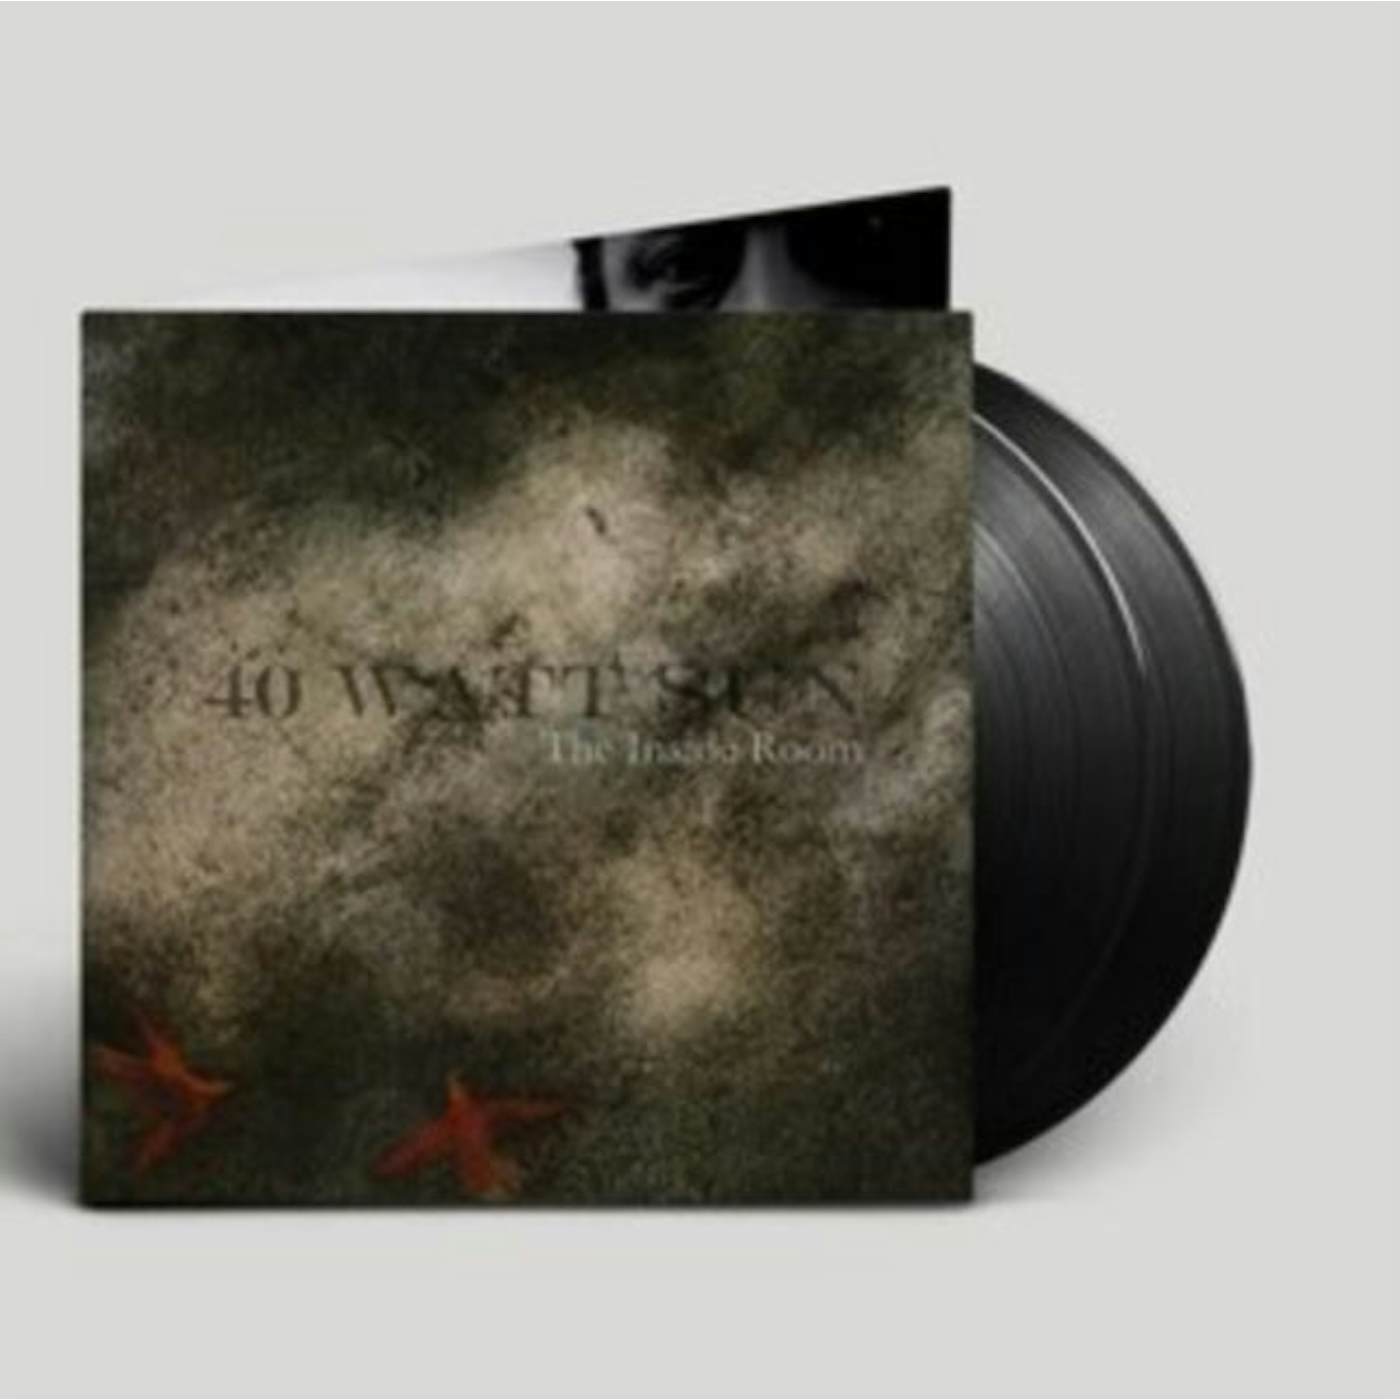 40 Watt Sun LP - Inside Room The (Vinyl)